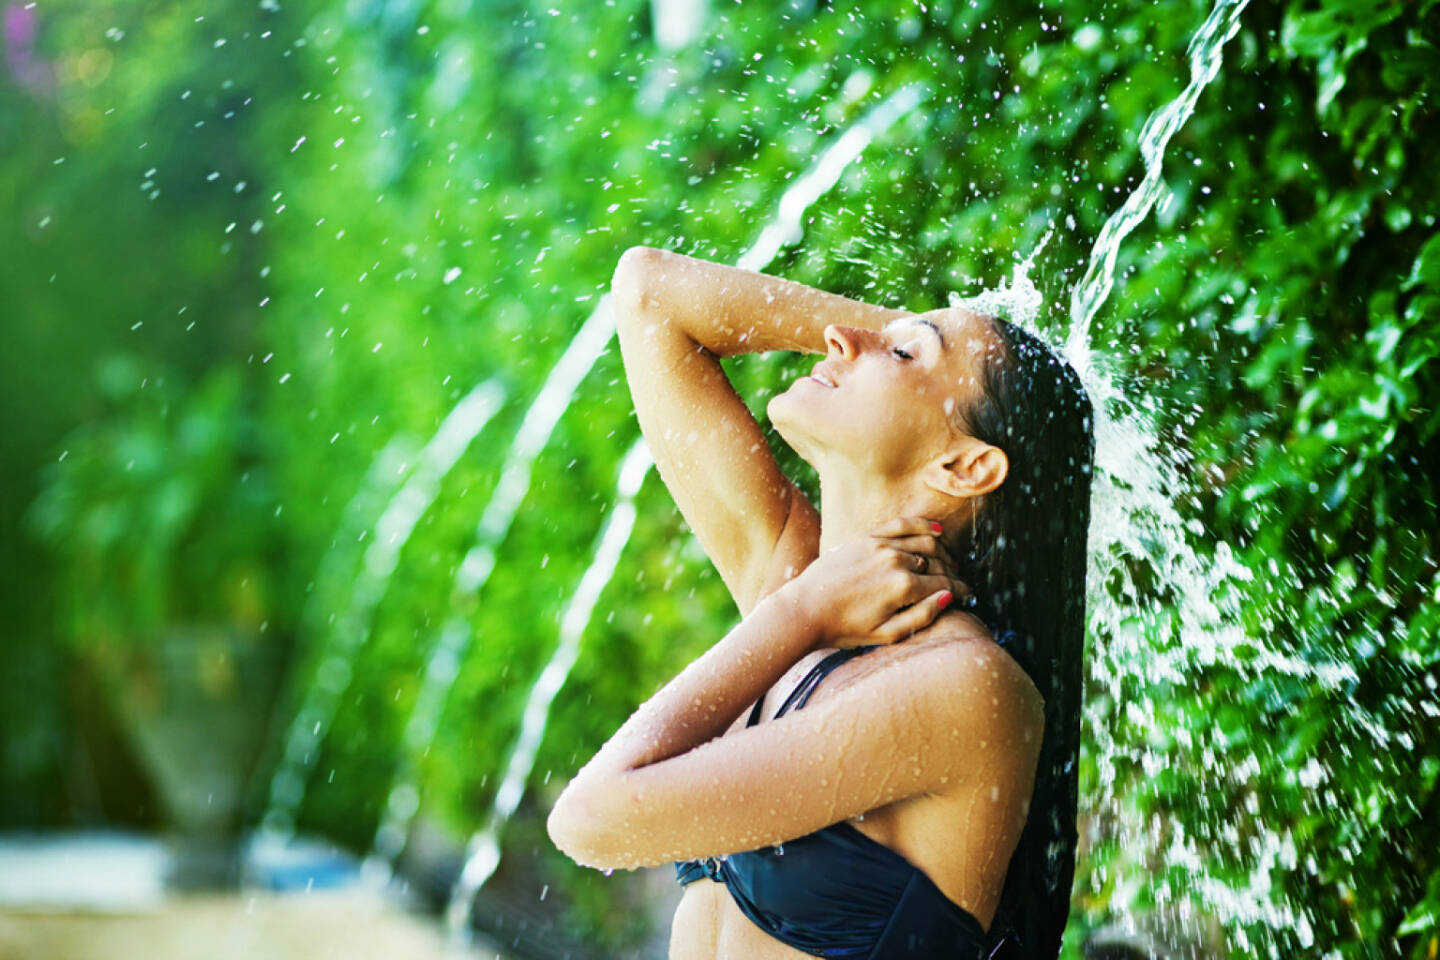 Abkühlung, Frau, Wasser, Genuss, Erfrischung, http://www.shutterstock.com/de/pic-153294050/stock-photo-woman-having-shower-under-tropical-waterfall-bali.html (Bild: shutterstock.com)